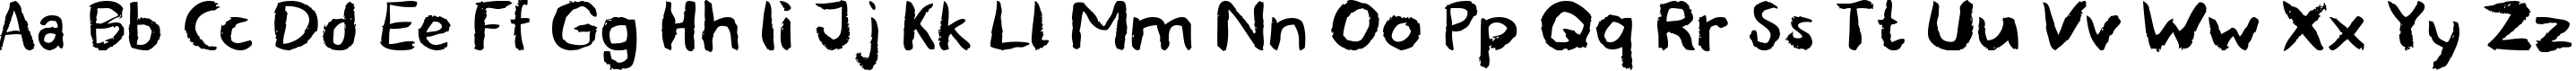 Пример написания английского алфавита шрифтом blemished